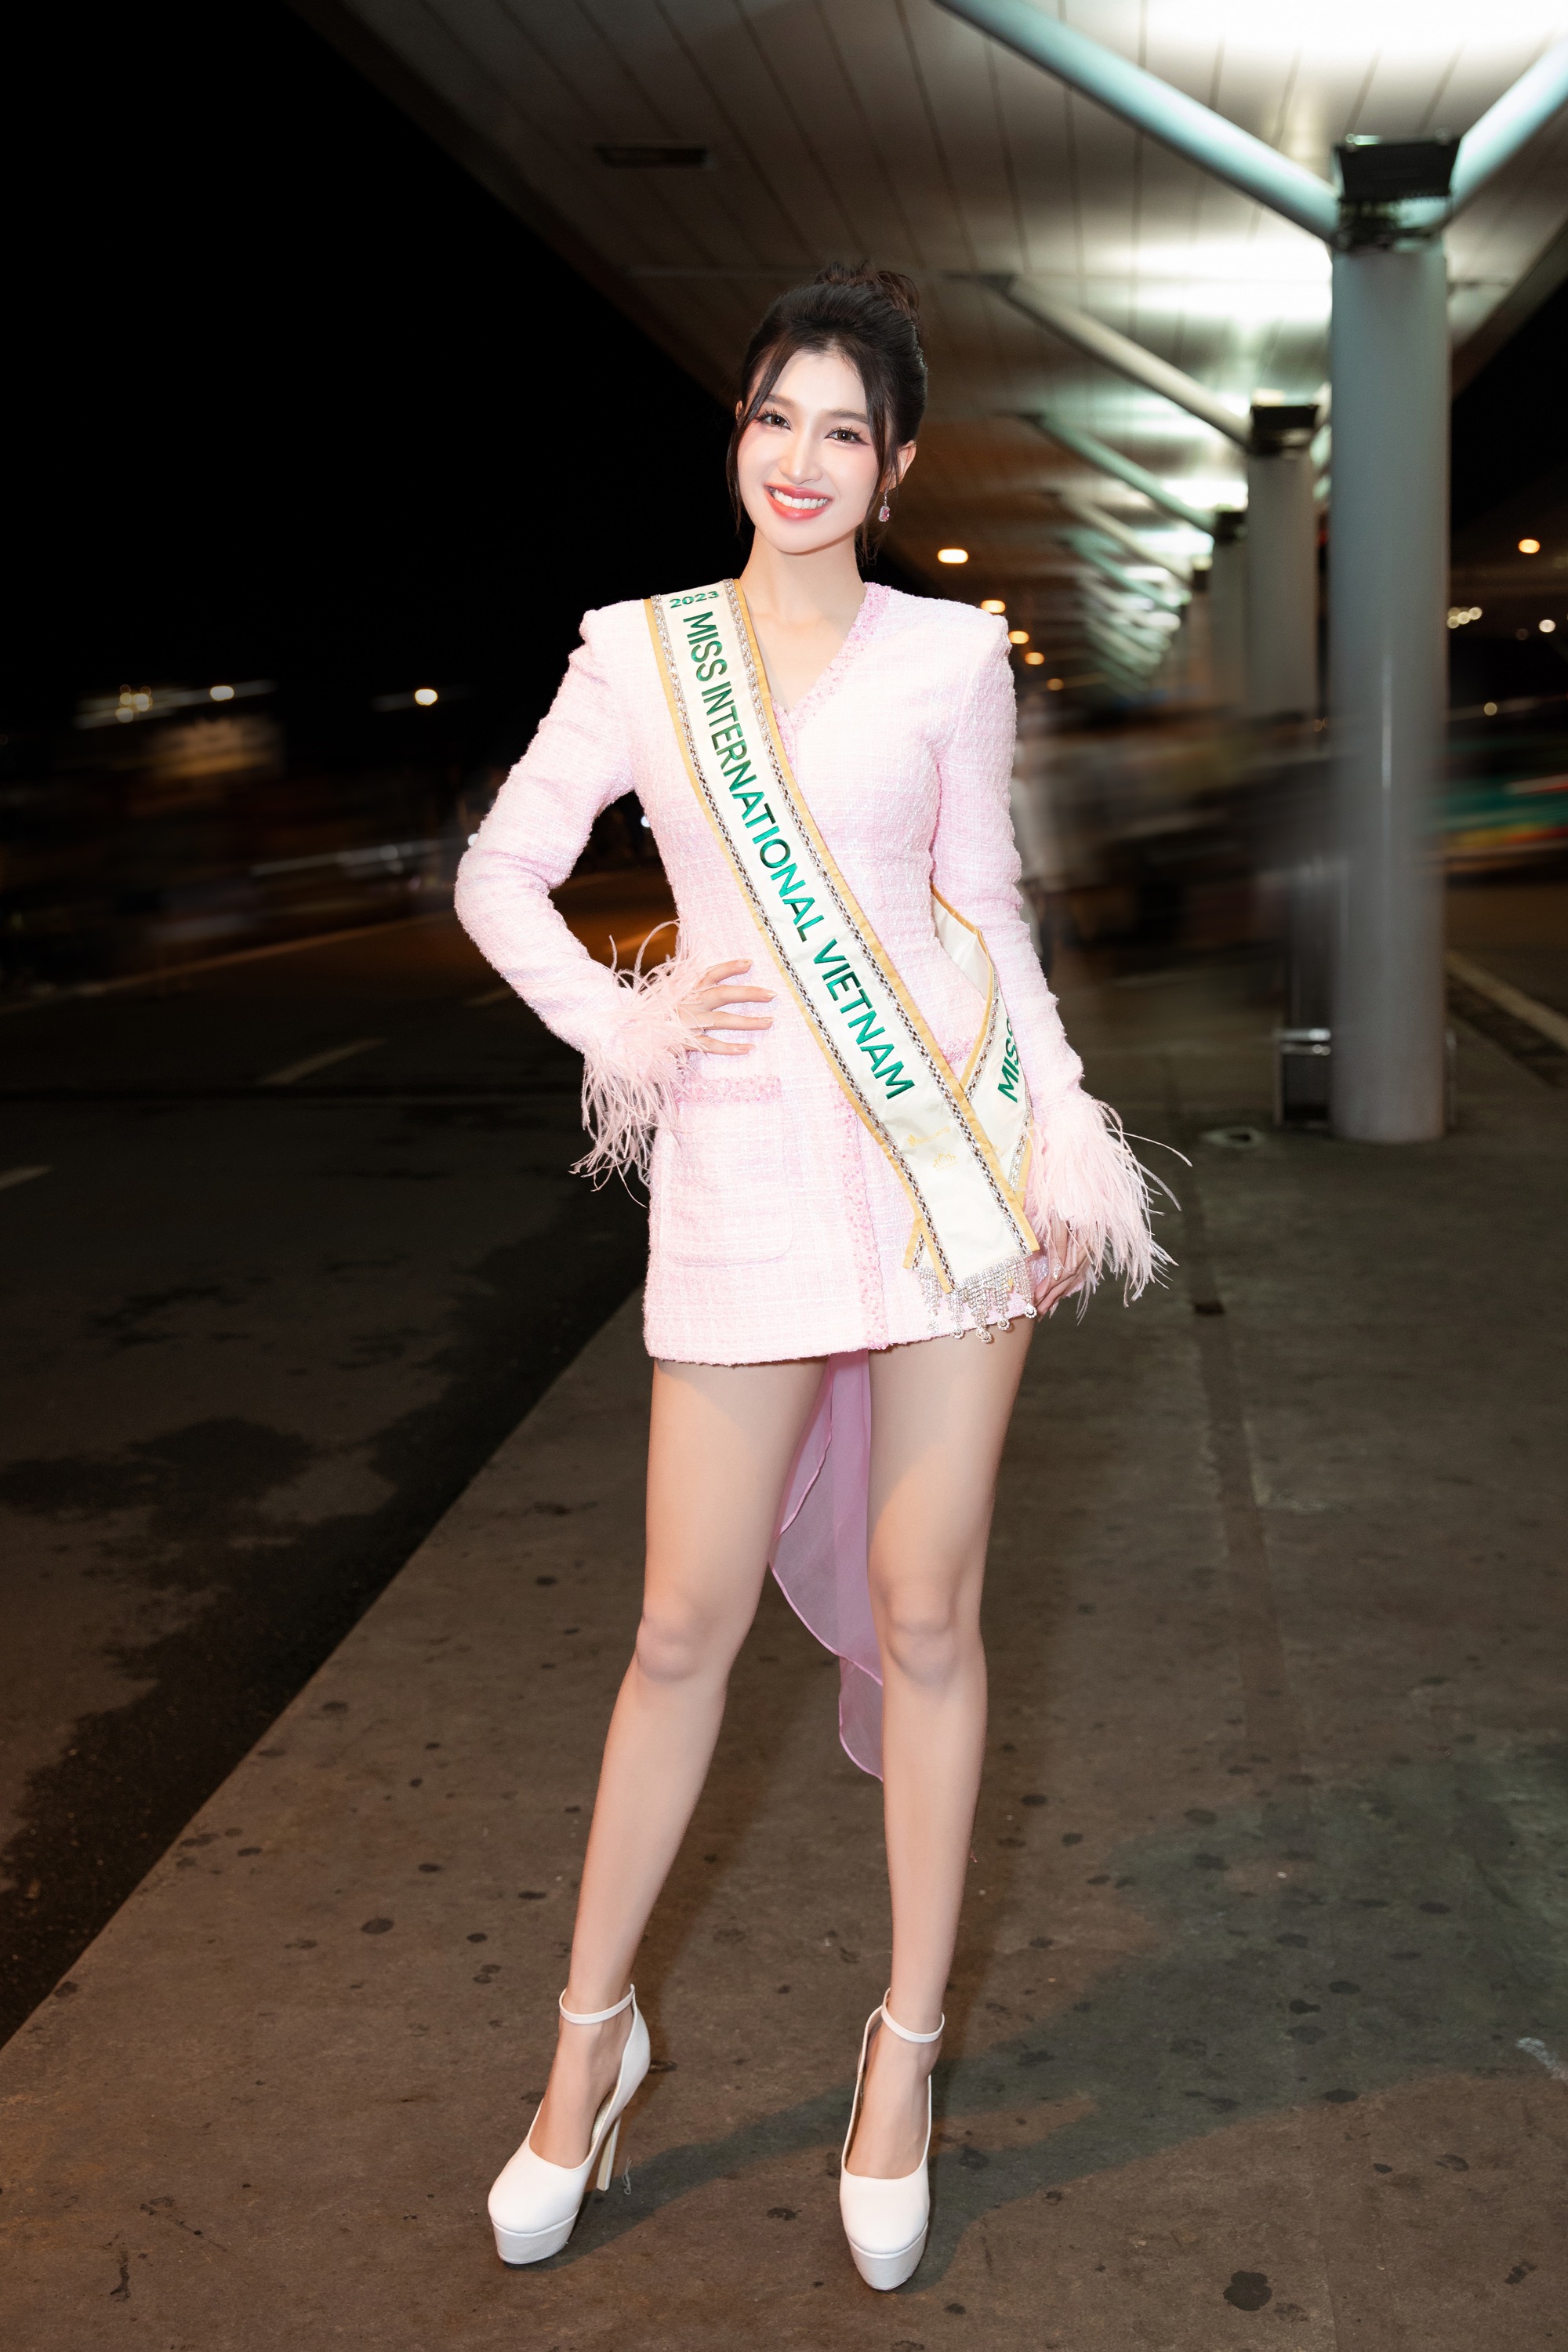 Á hậu Phương Nhi lên đường thi Miss International 2023 gây chú ý khi mang kiện hành lý đặc biệt dài 2m - Ảnh 2.